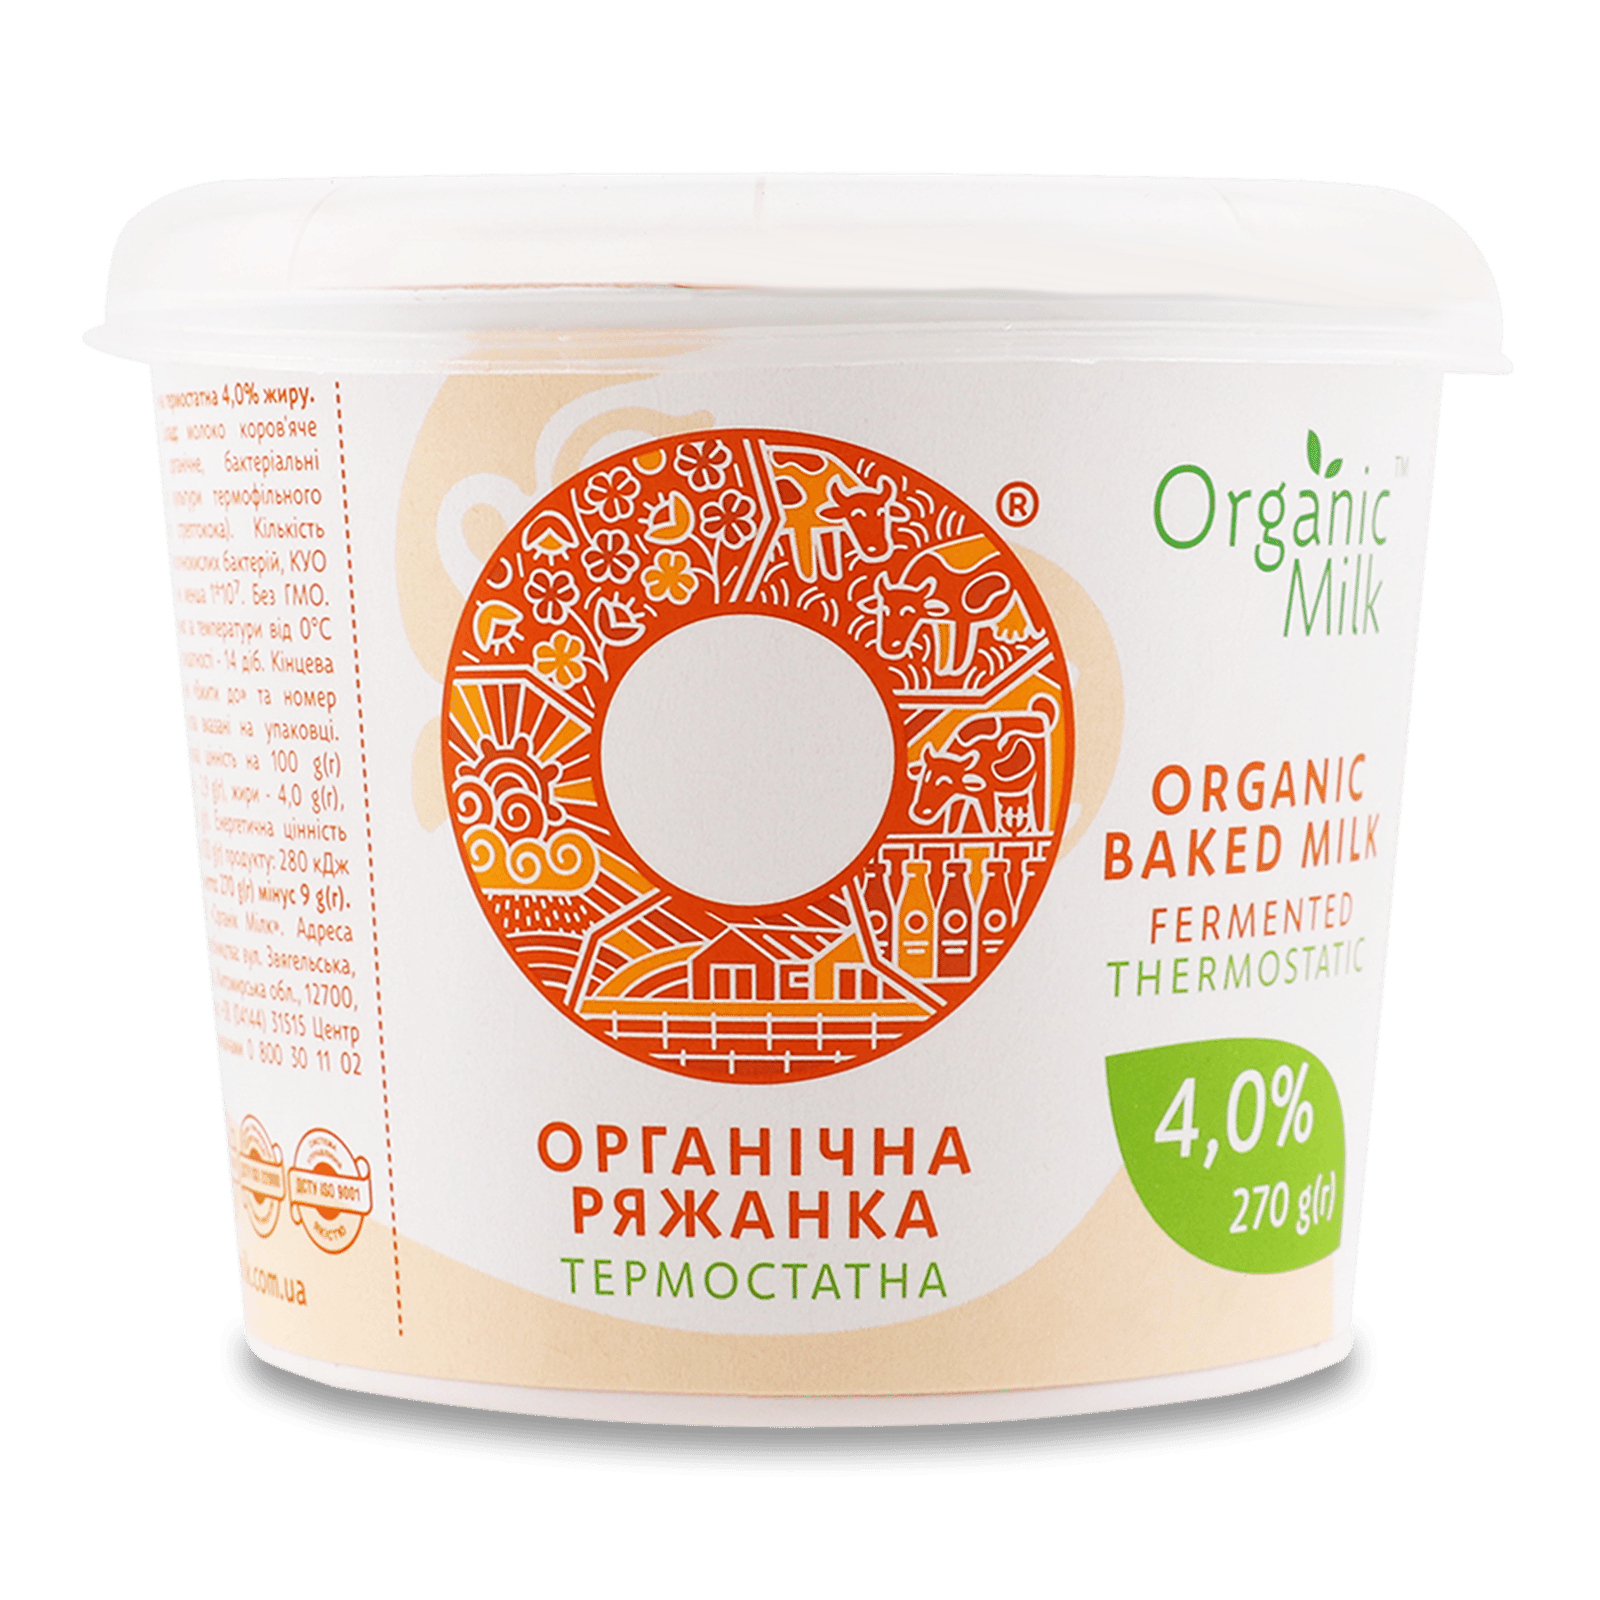 Ряжанка Organic Milk термостатна органічна 4% - 1